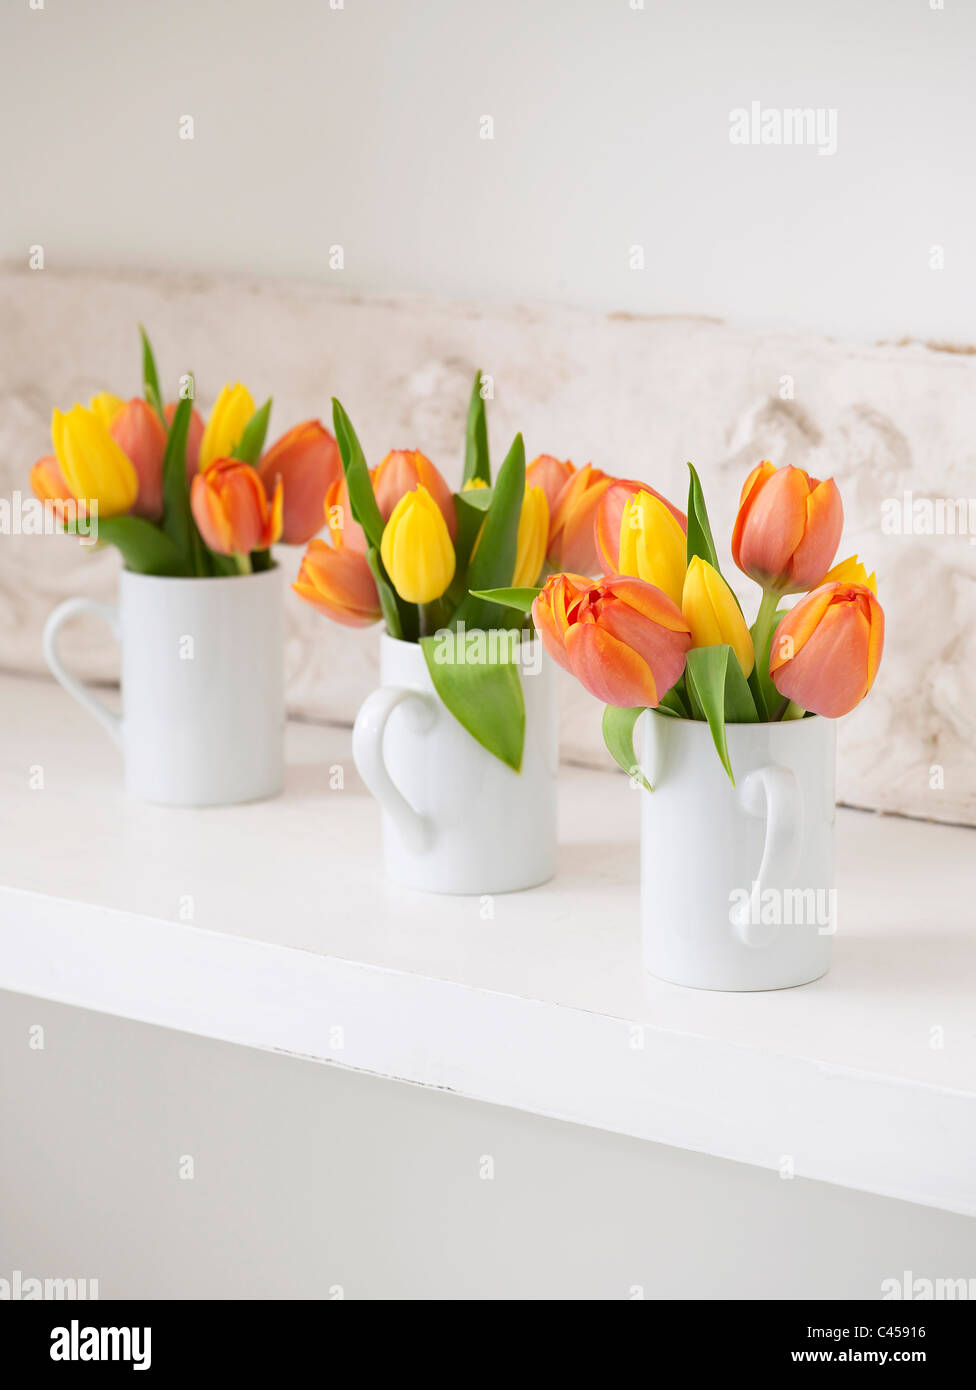 Tazze contenenti i tulipani sul ripiano, close-up Foto Stock